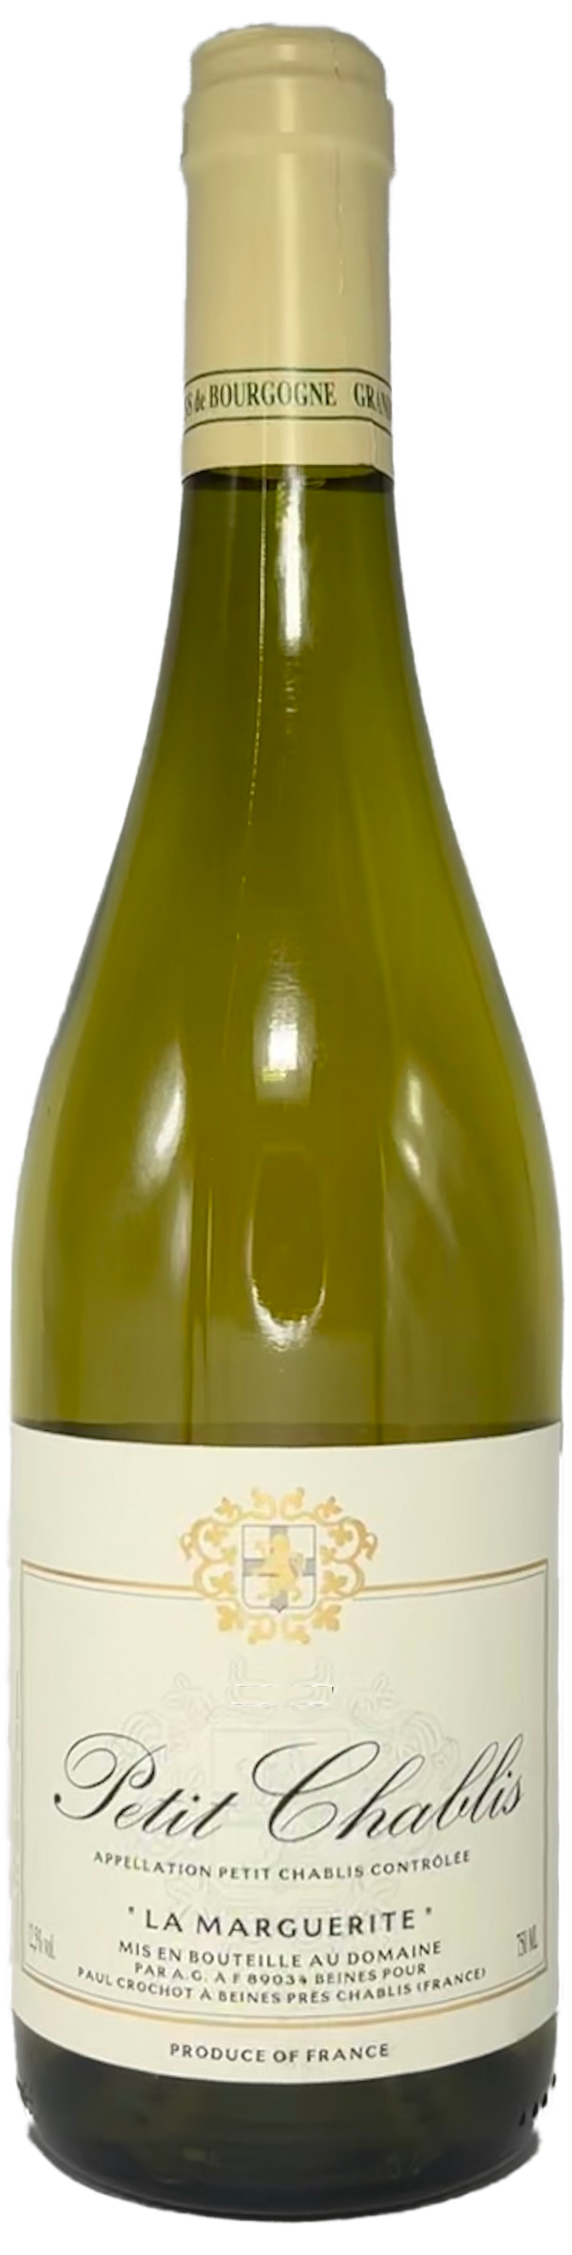 Paul Crochot Petit Chablis la Marguerite Chardonnay 12,5% vol. 0,75L